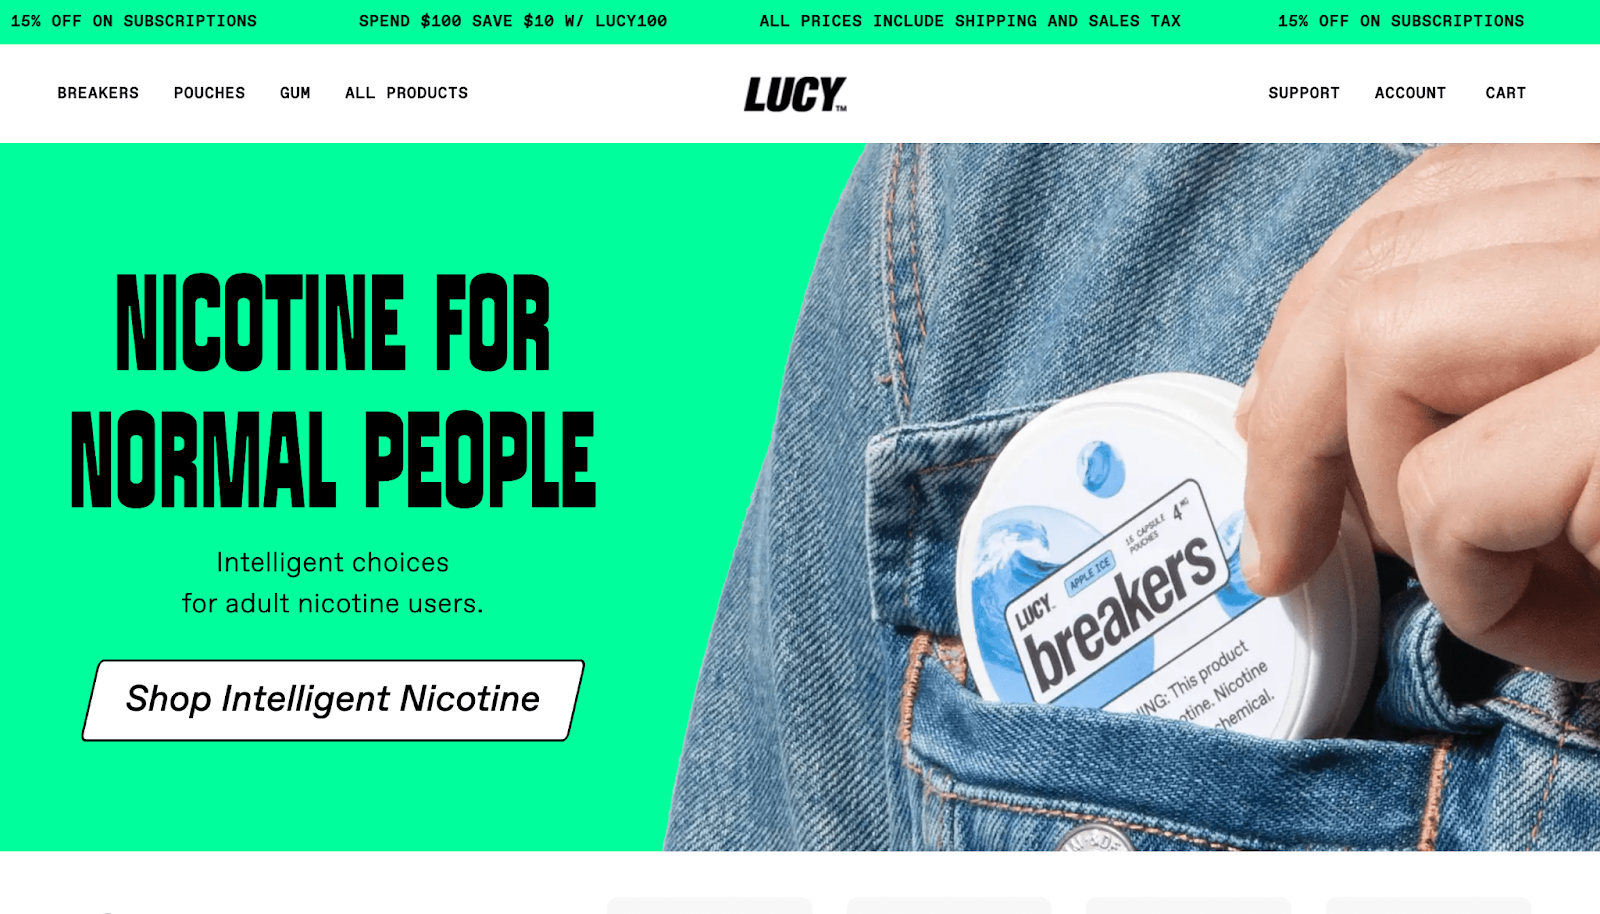 Lucy's website